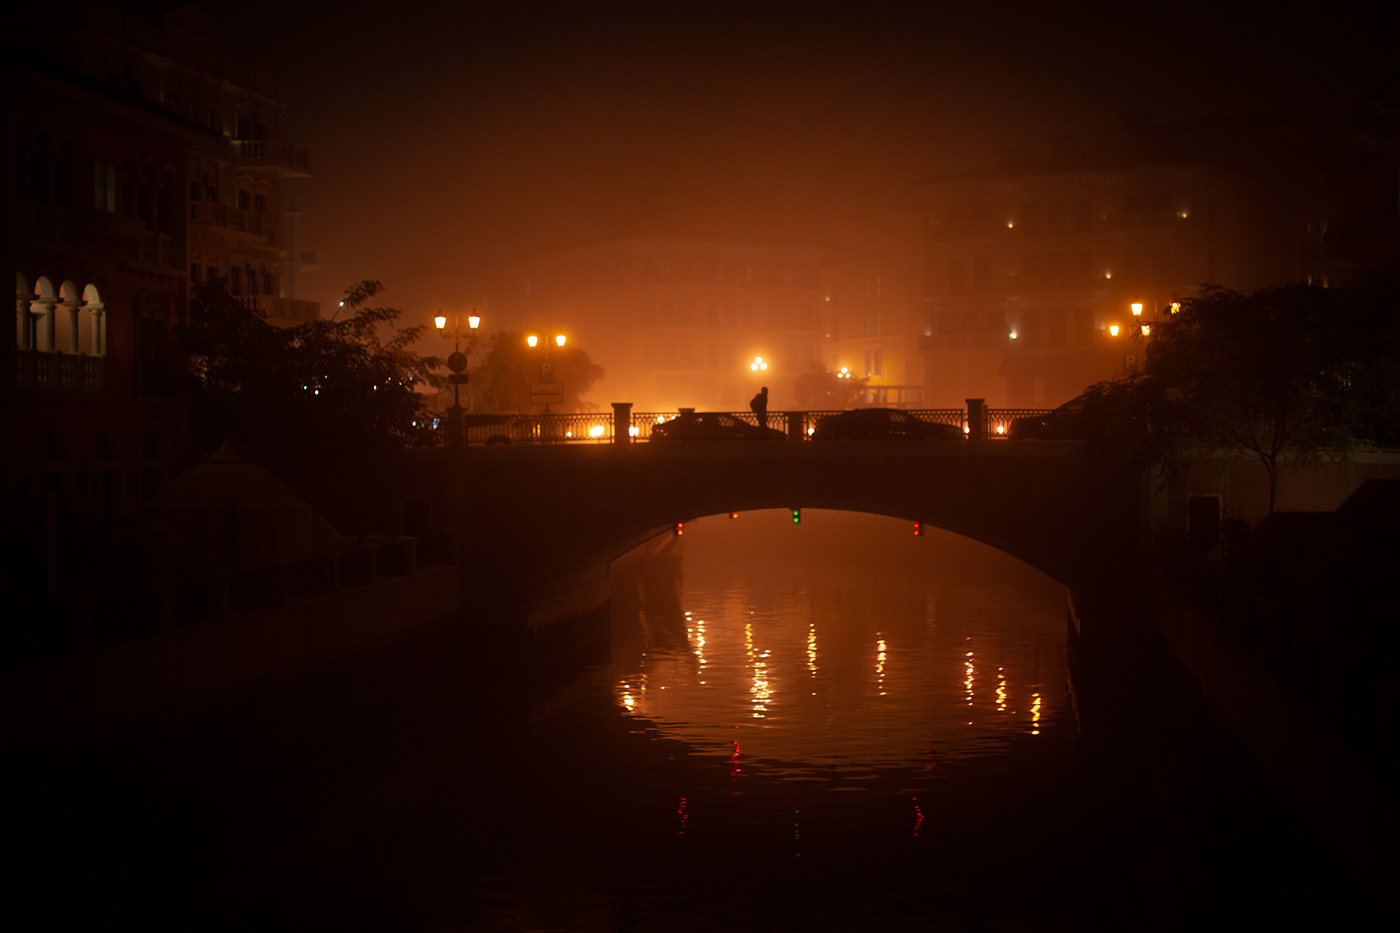 Cinema dark fog mist night Qatar ambiance artistic horror Photography 